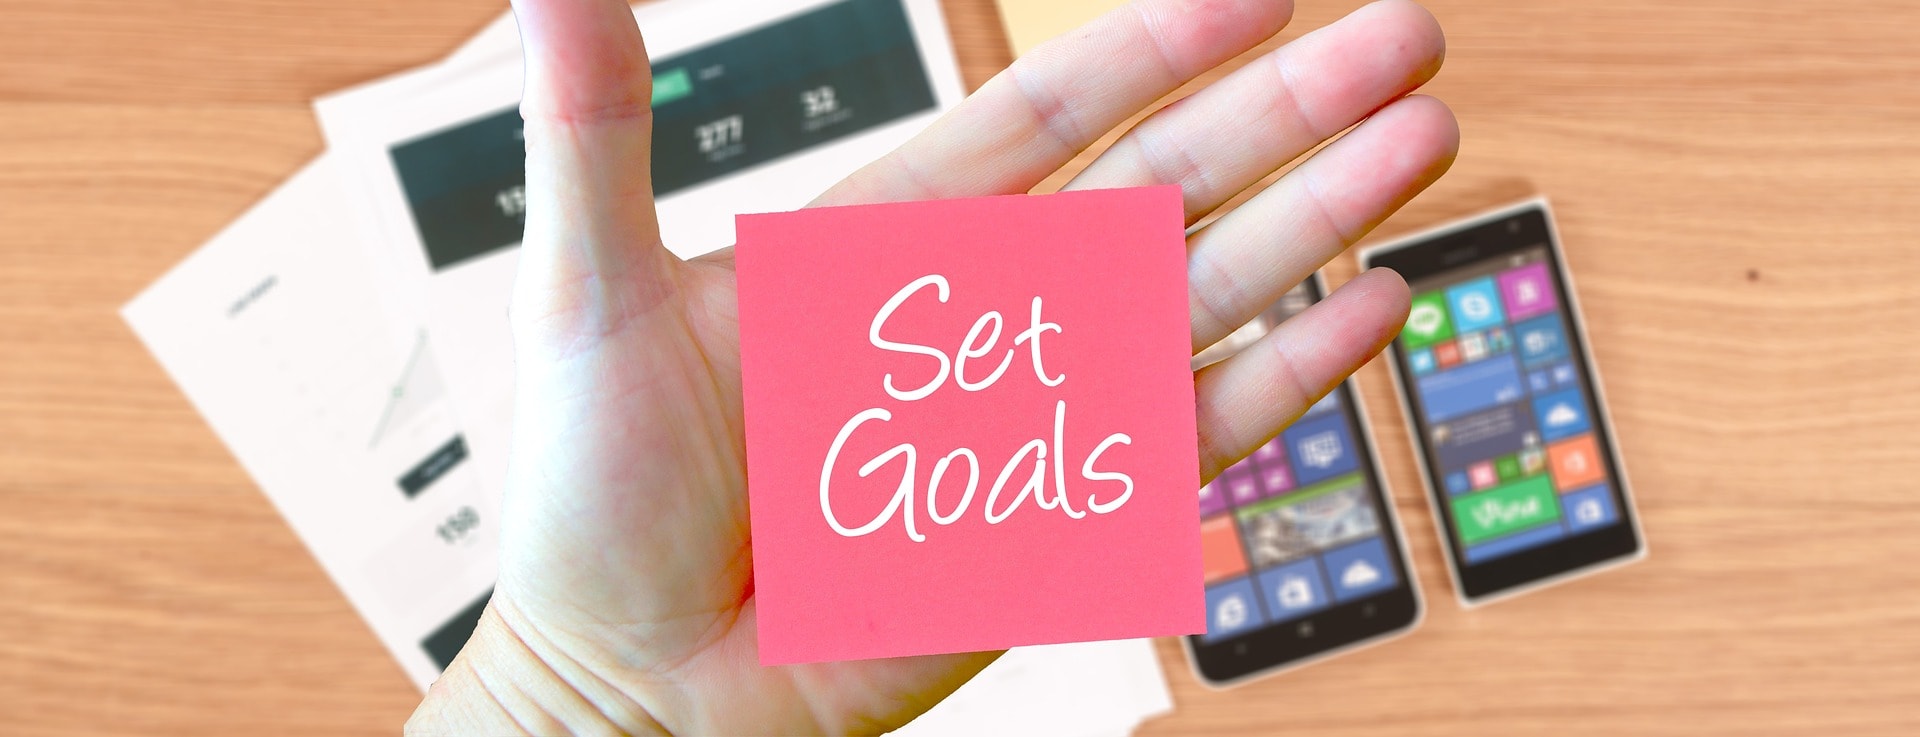 ciele - goals 2691265 1920 - SMART analýza cieľov pomáha splniť osobné aj kariérne predsavzatia